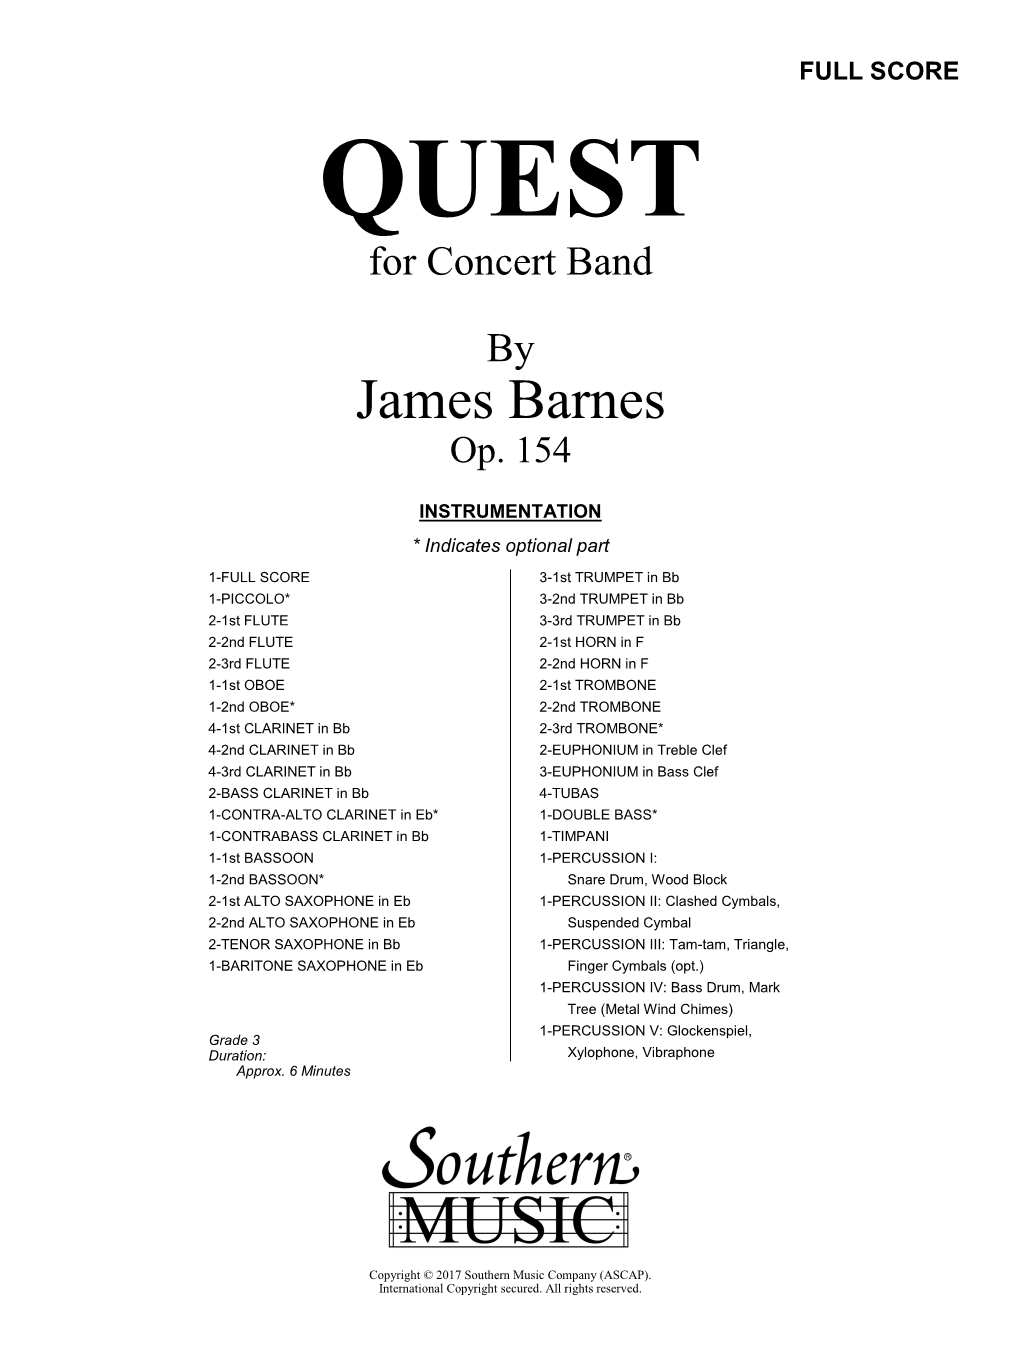 James Barnes Op